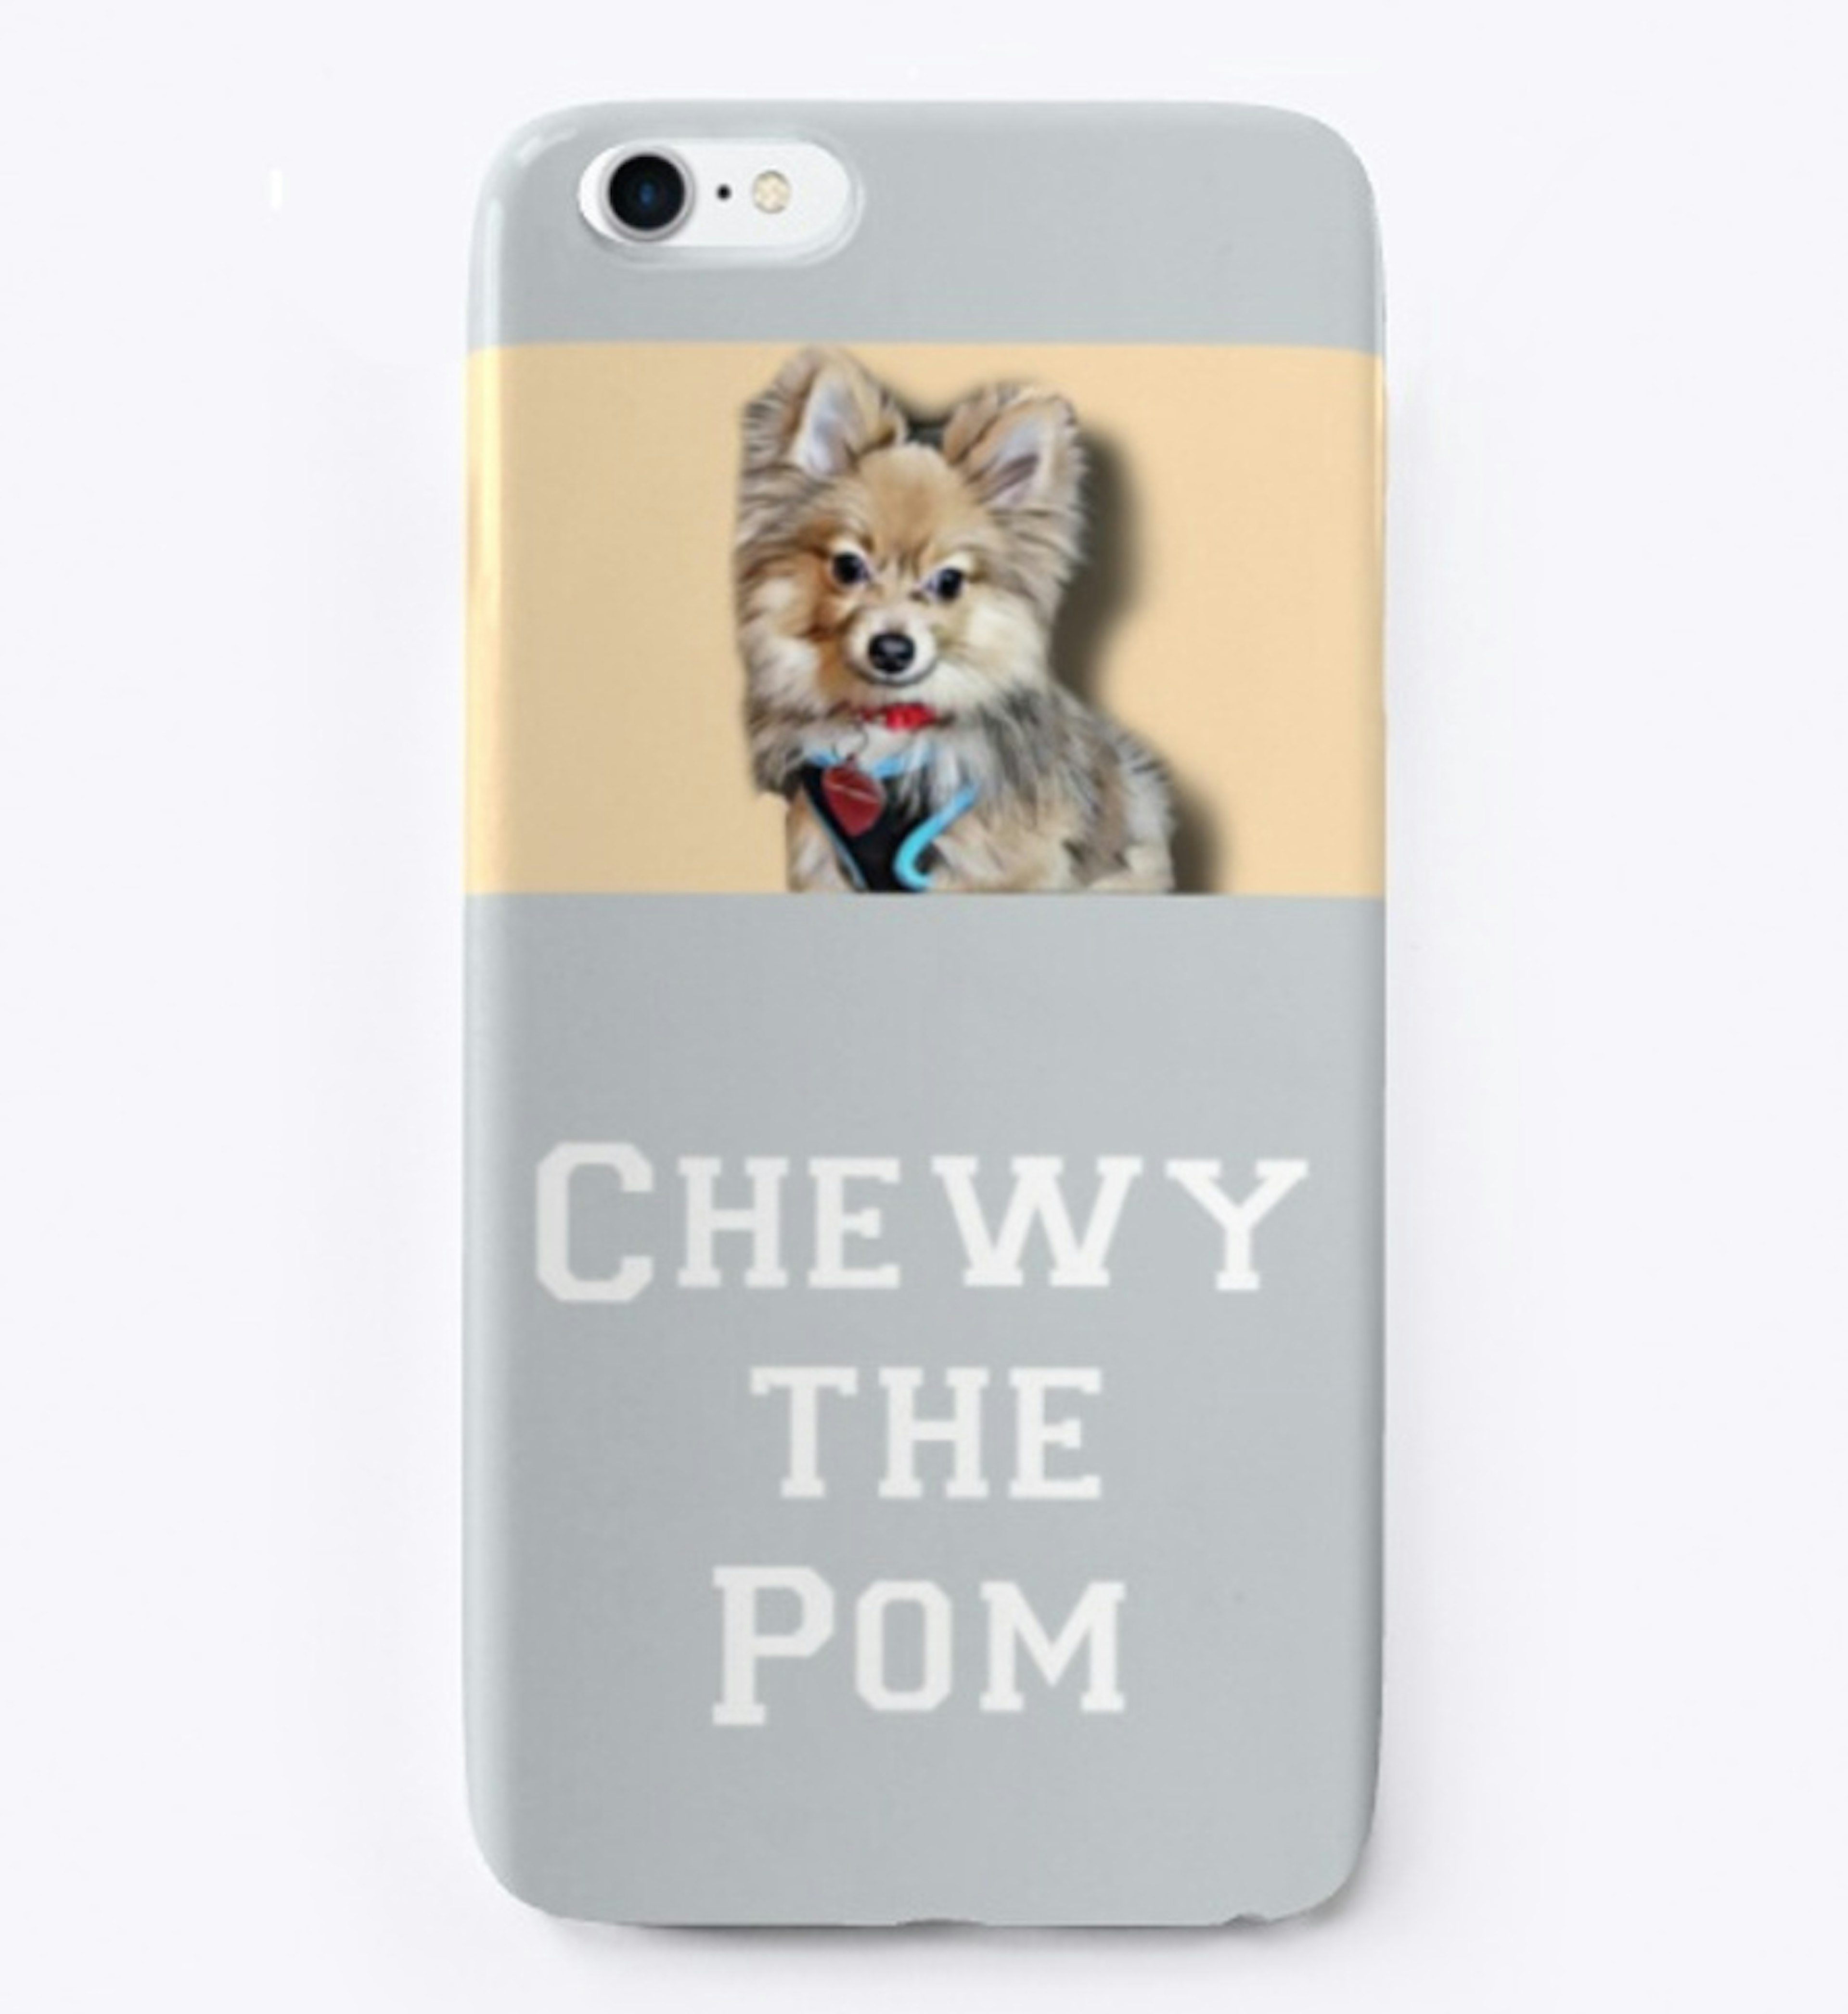 Chewy THE Pom 👑